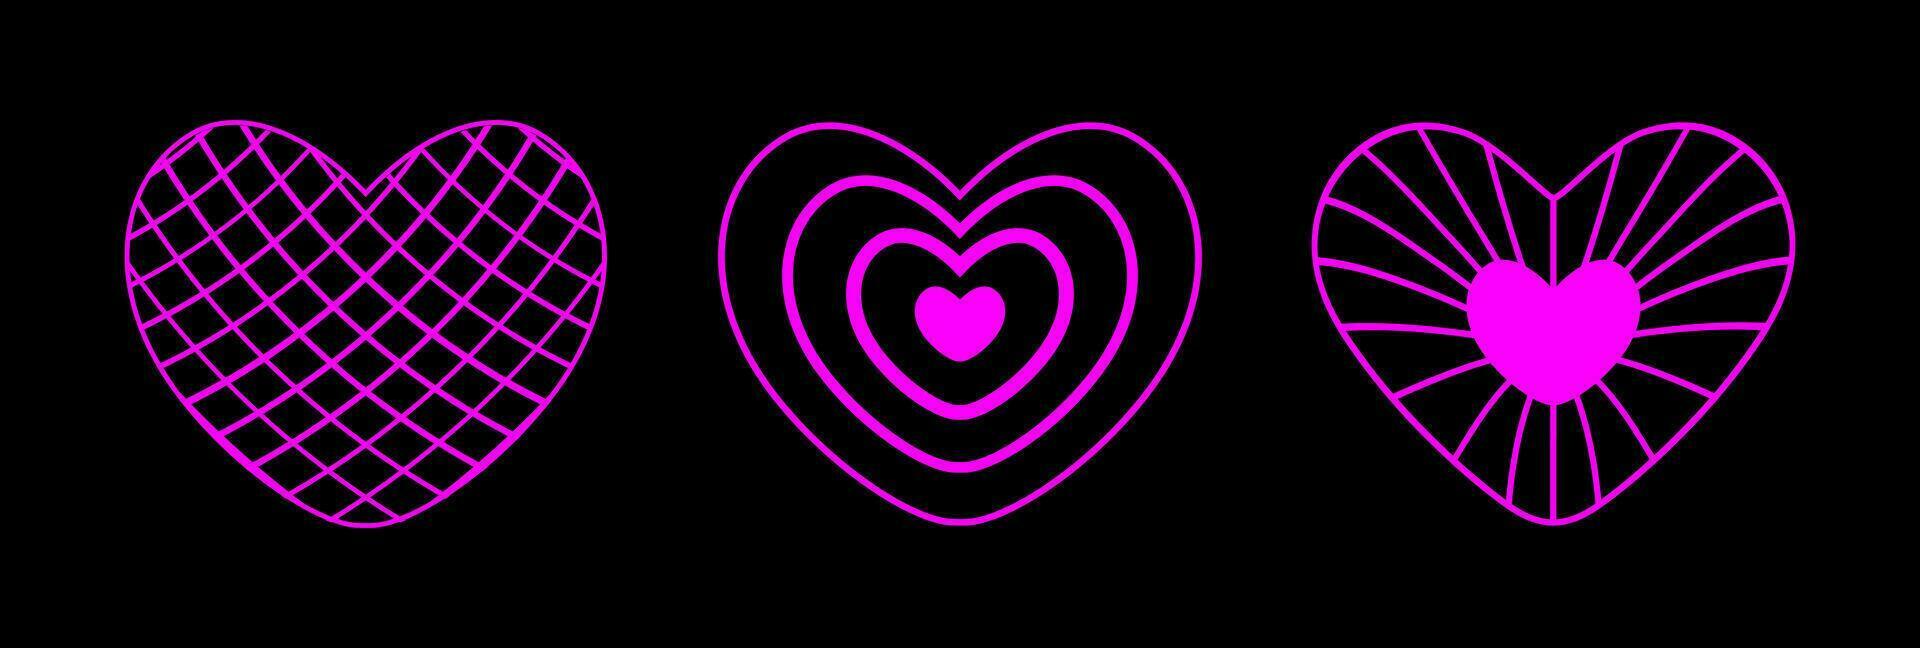 néon Rosa estrutura de arame coração formas conjunto em Preto fundo. futurista cyberpunk esboço figuras. ano 2000 retro estilo. vetor